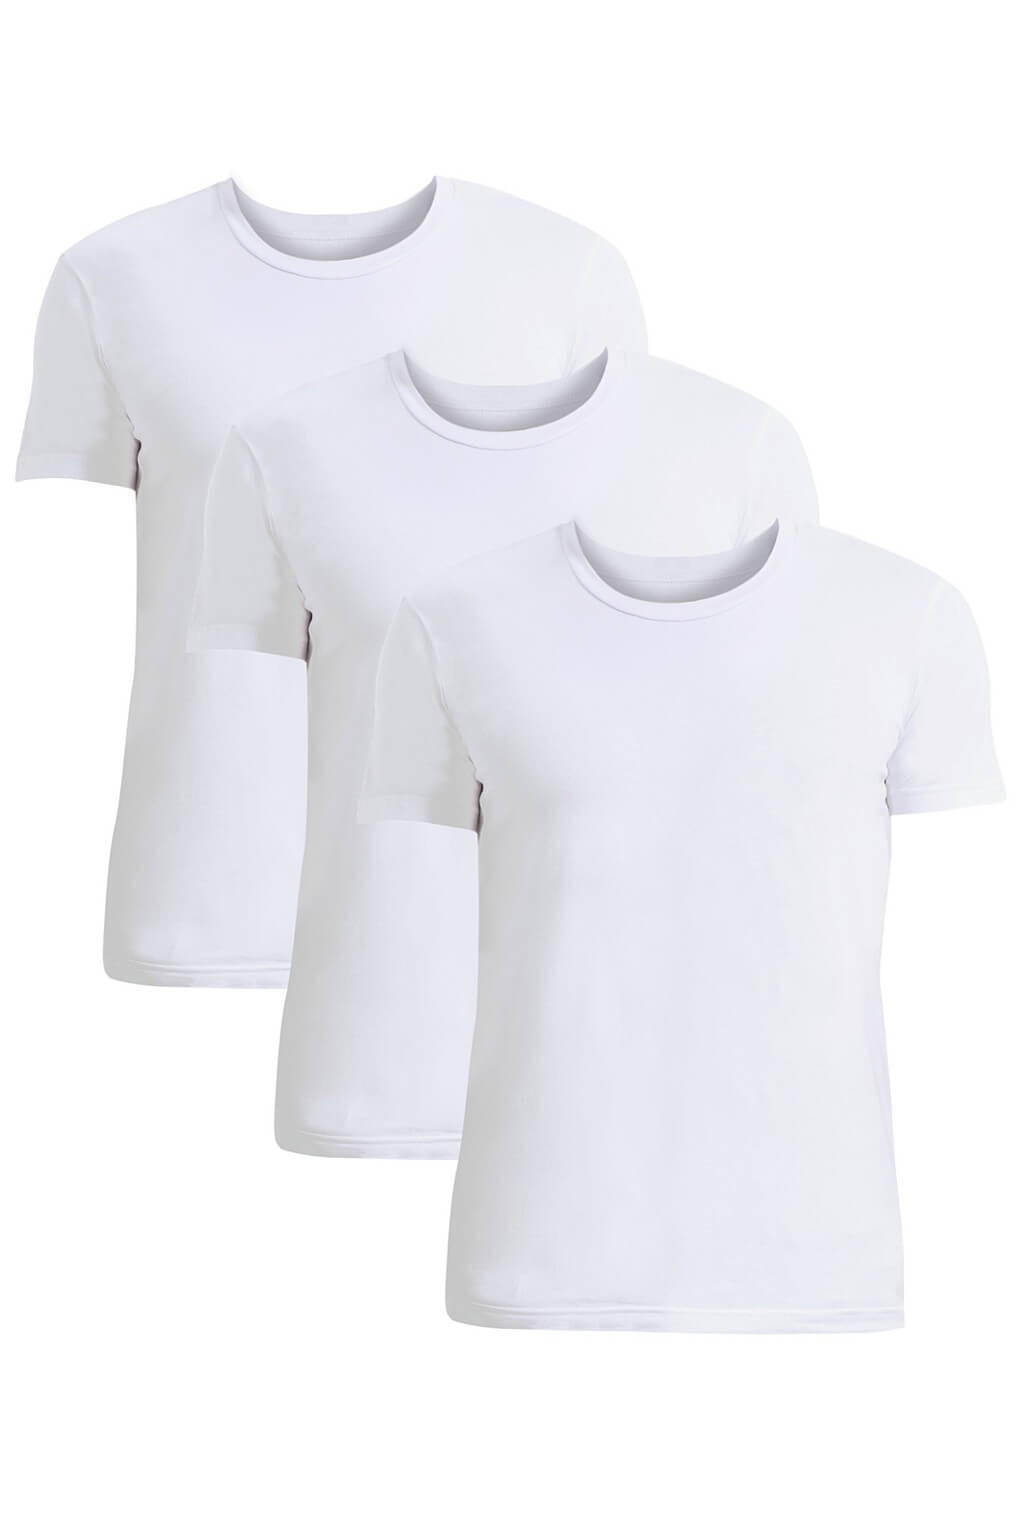 Tezen kvalitní pánské triko do 'U' FTU01 - trojbal L bílá